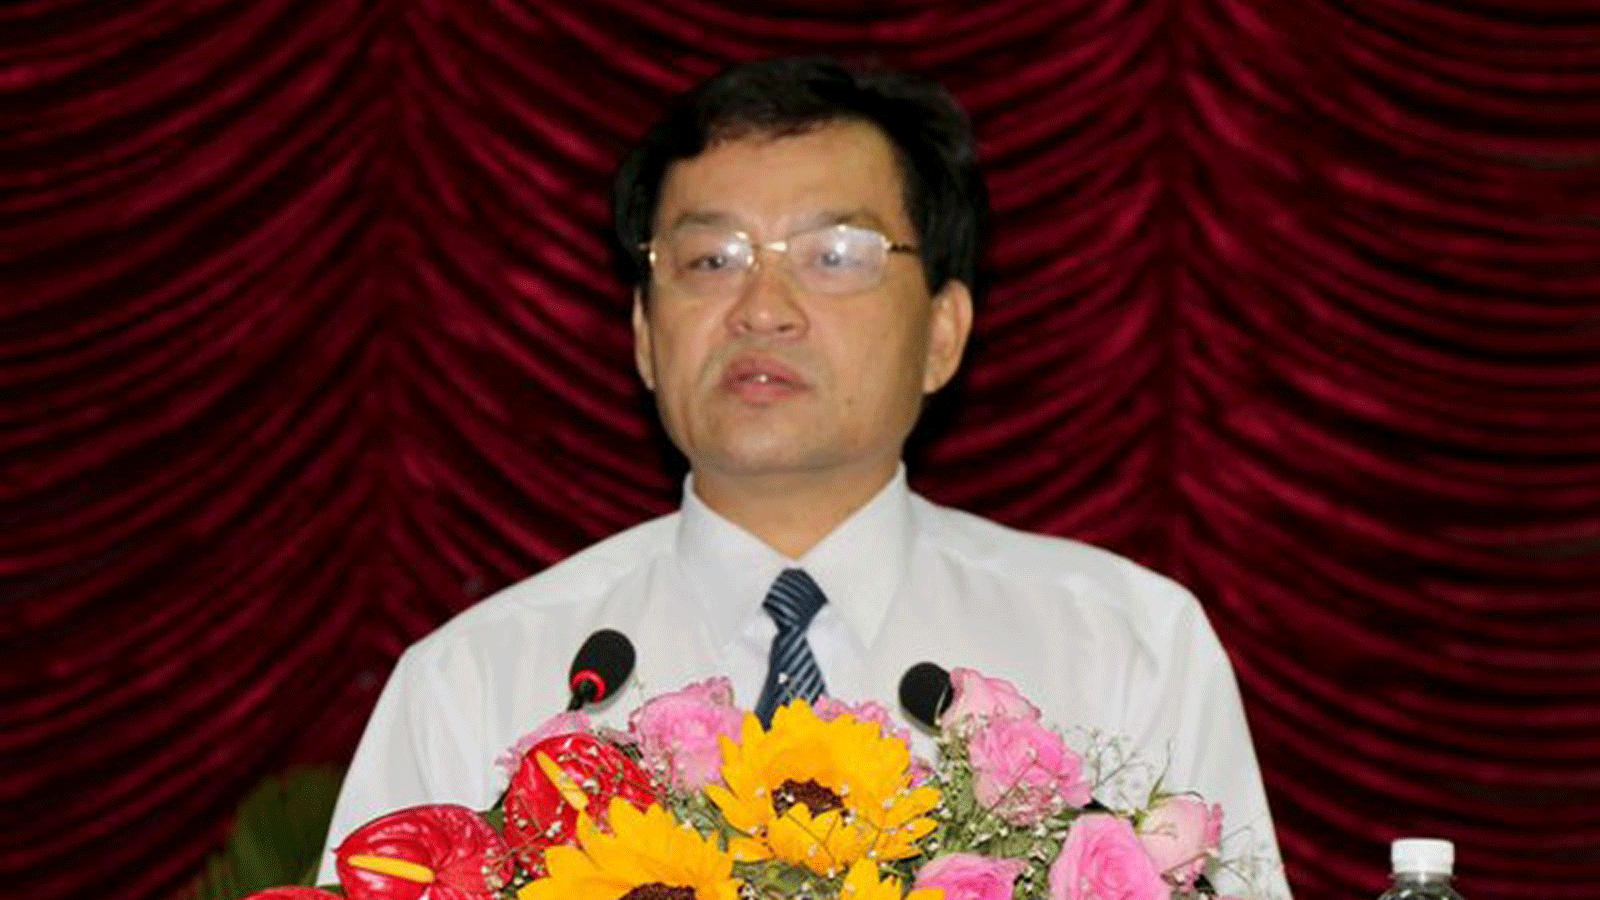 Ông Nguyễn Ngọc Hai - nguyên Chủ tịch UBND tỉnh Bình Thuận. Ảnh: sggp.org.vn